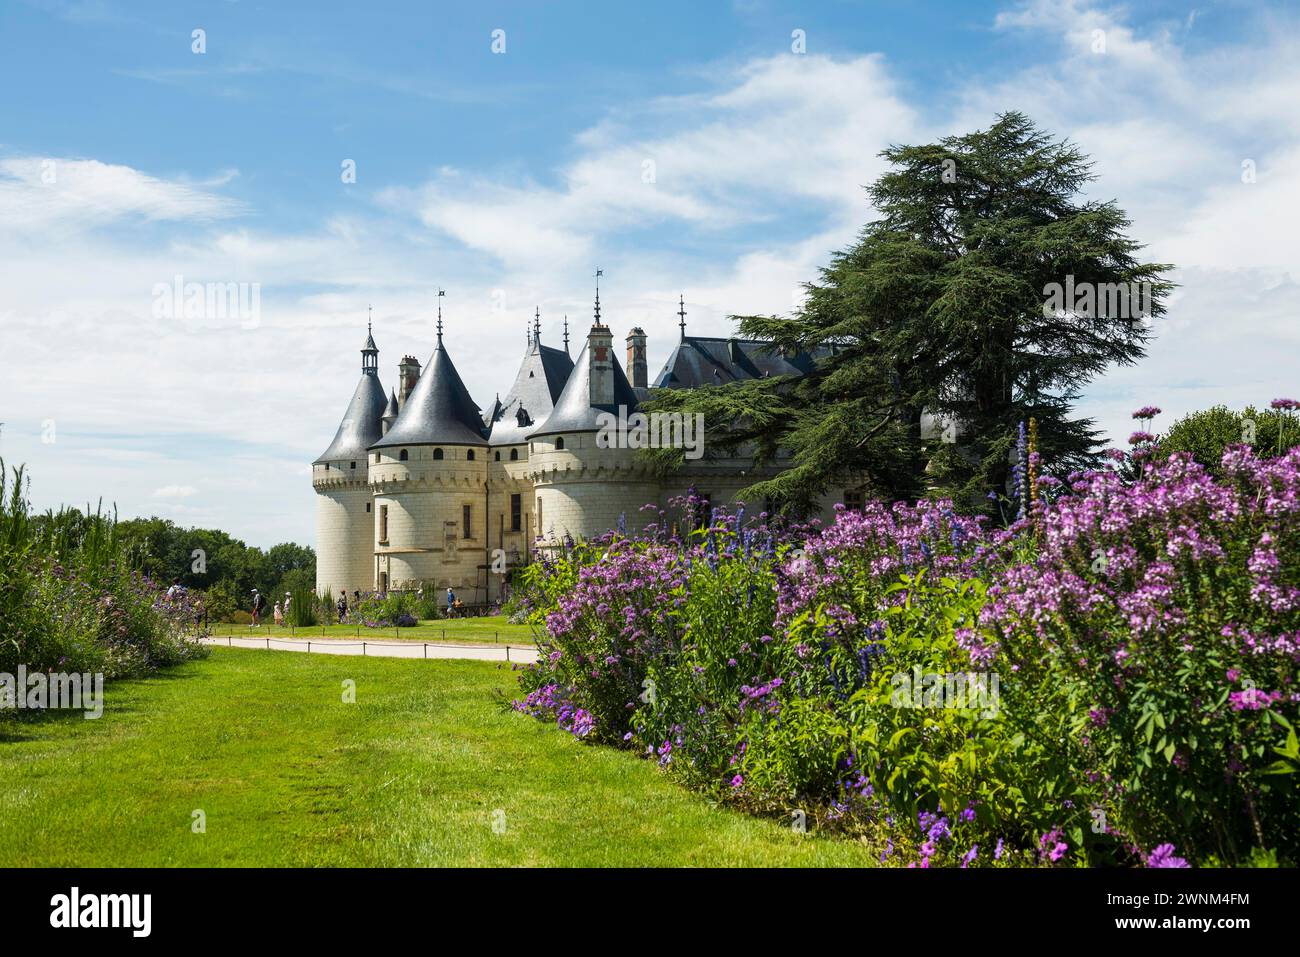 Chaumont Castle and Park, Chateau de Chaumont, Chaumont-sur-Loire, Loire, Departement Loir-et-Cher, France Stock Photo